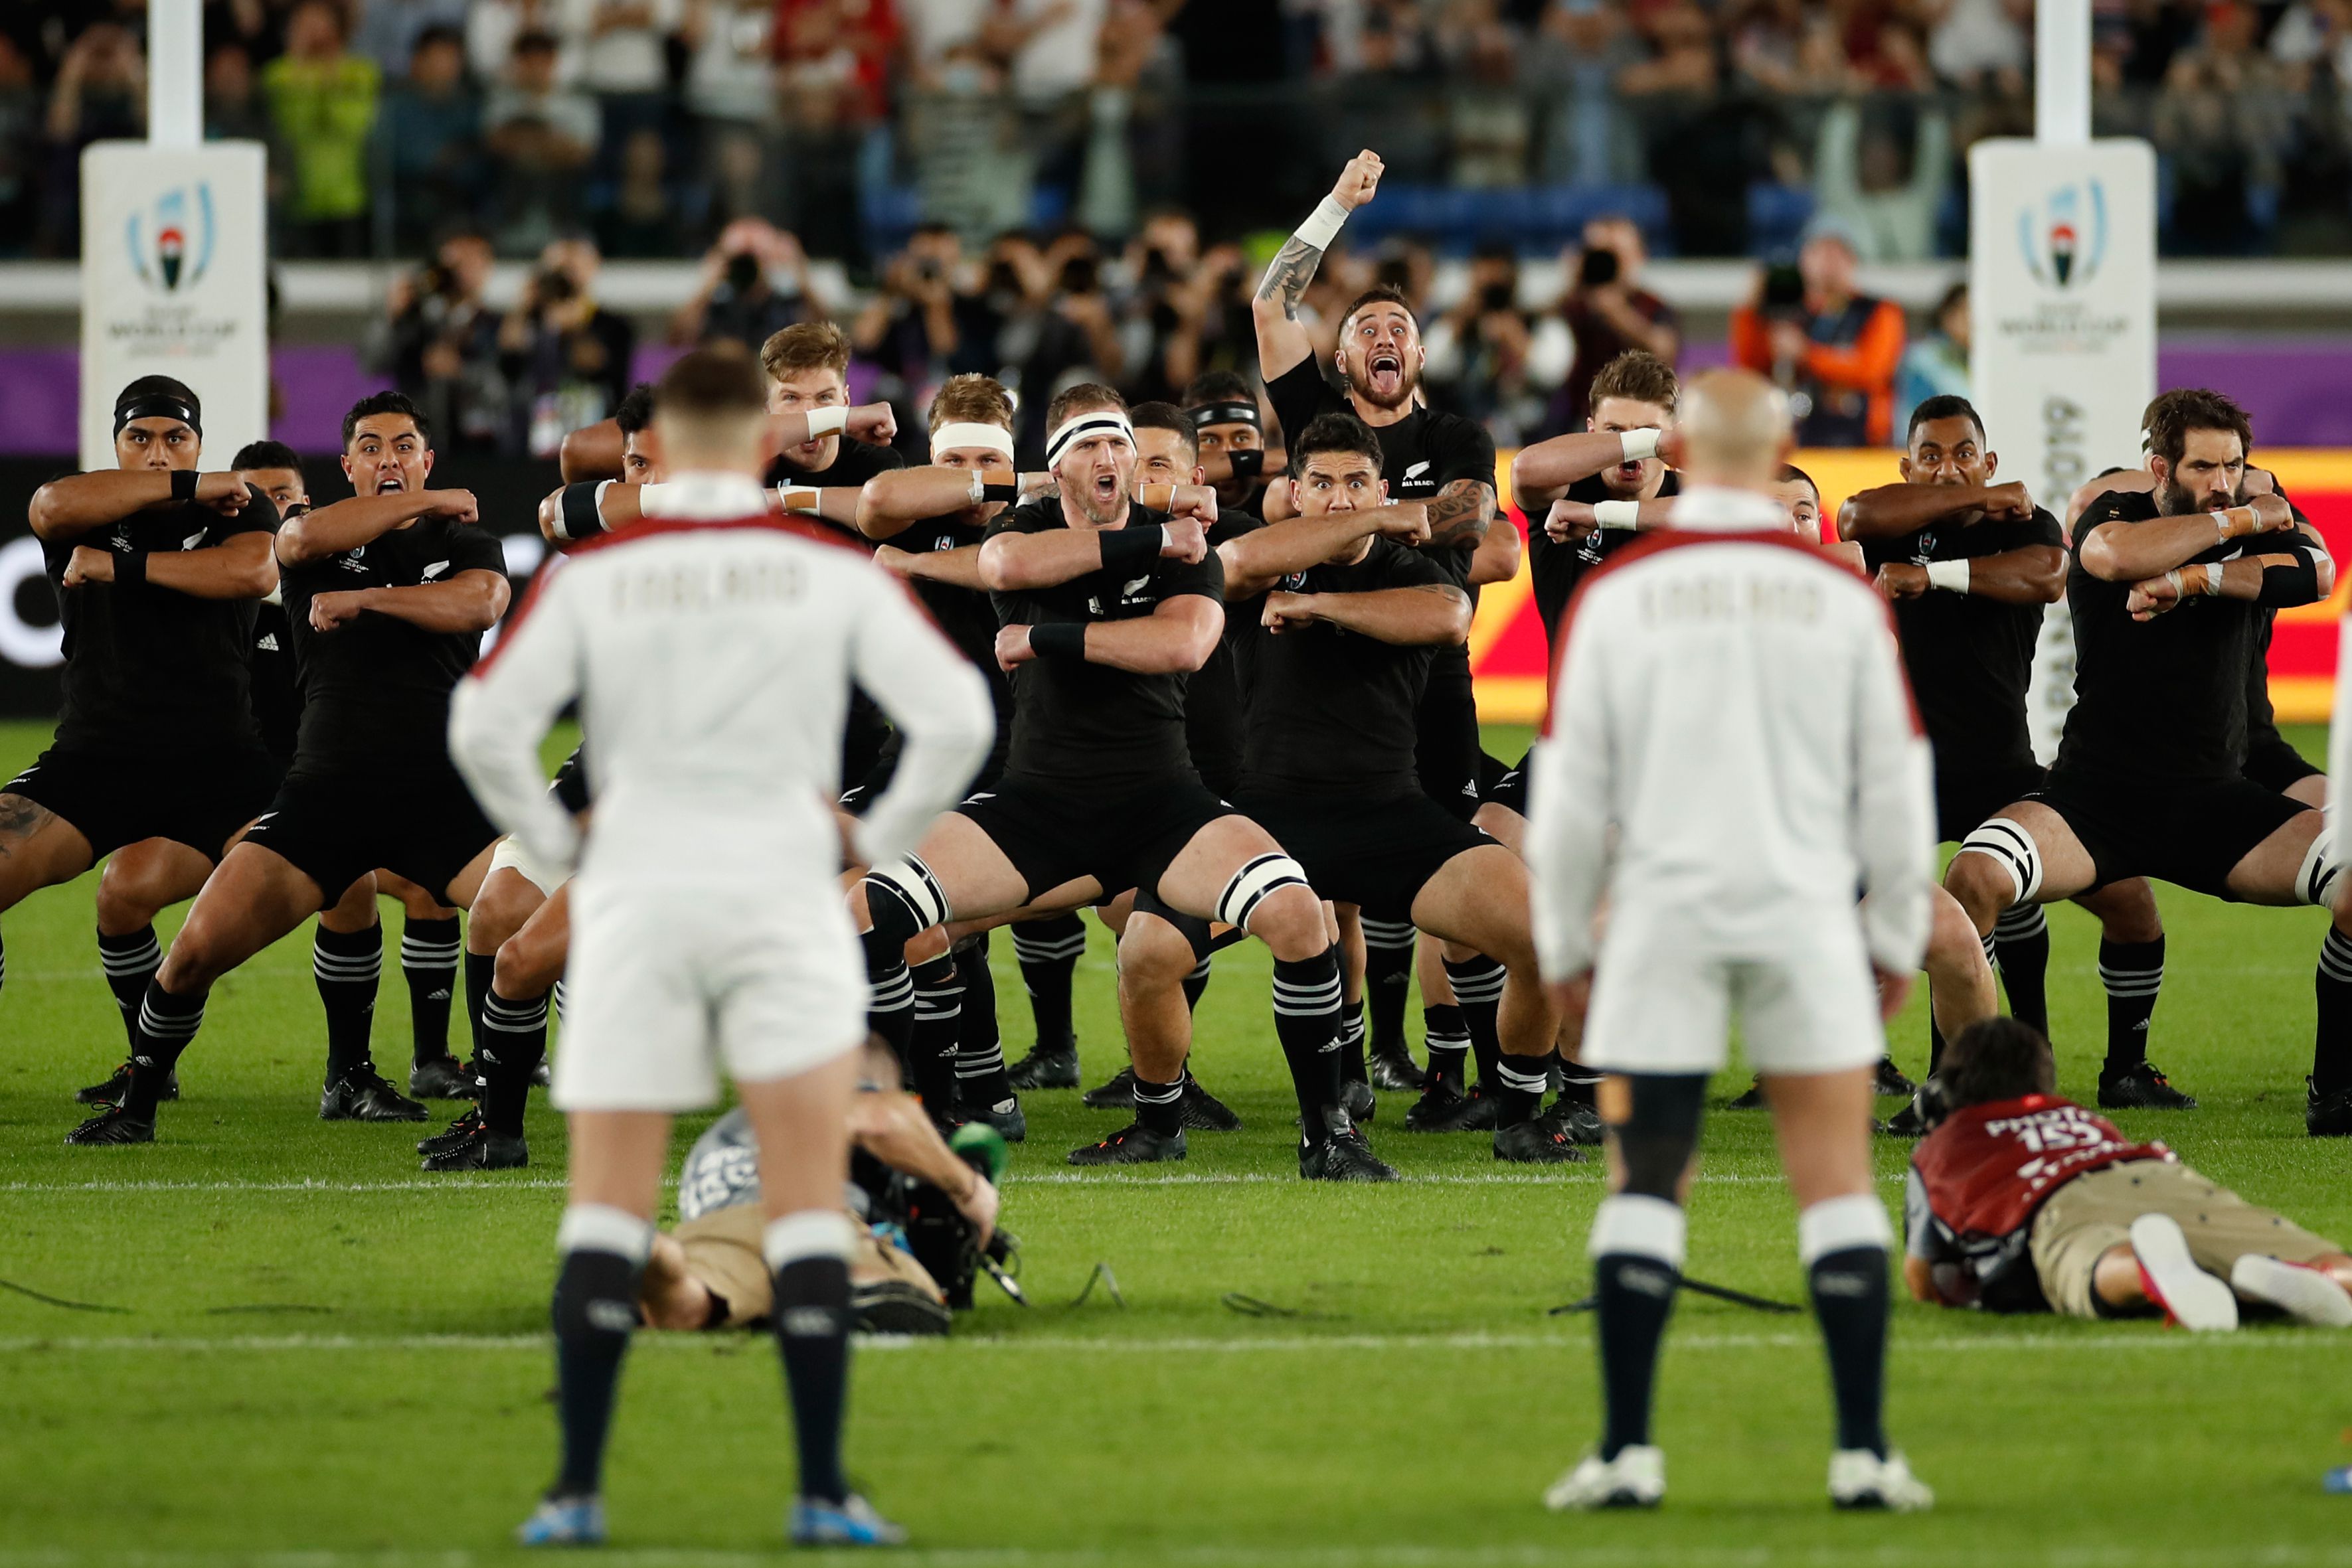 Inglaterra y su actitud desafiante ante el Haka de Nueva Zelanda (Photo by Odd ANDERSEN / AFP)